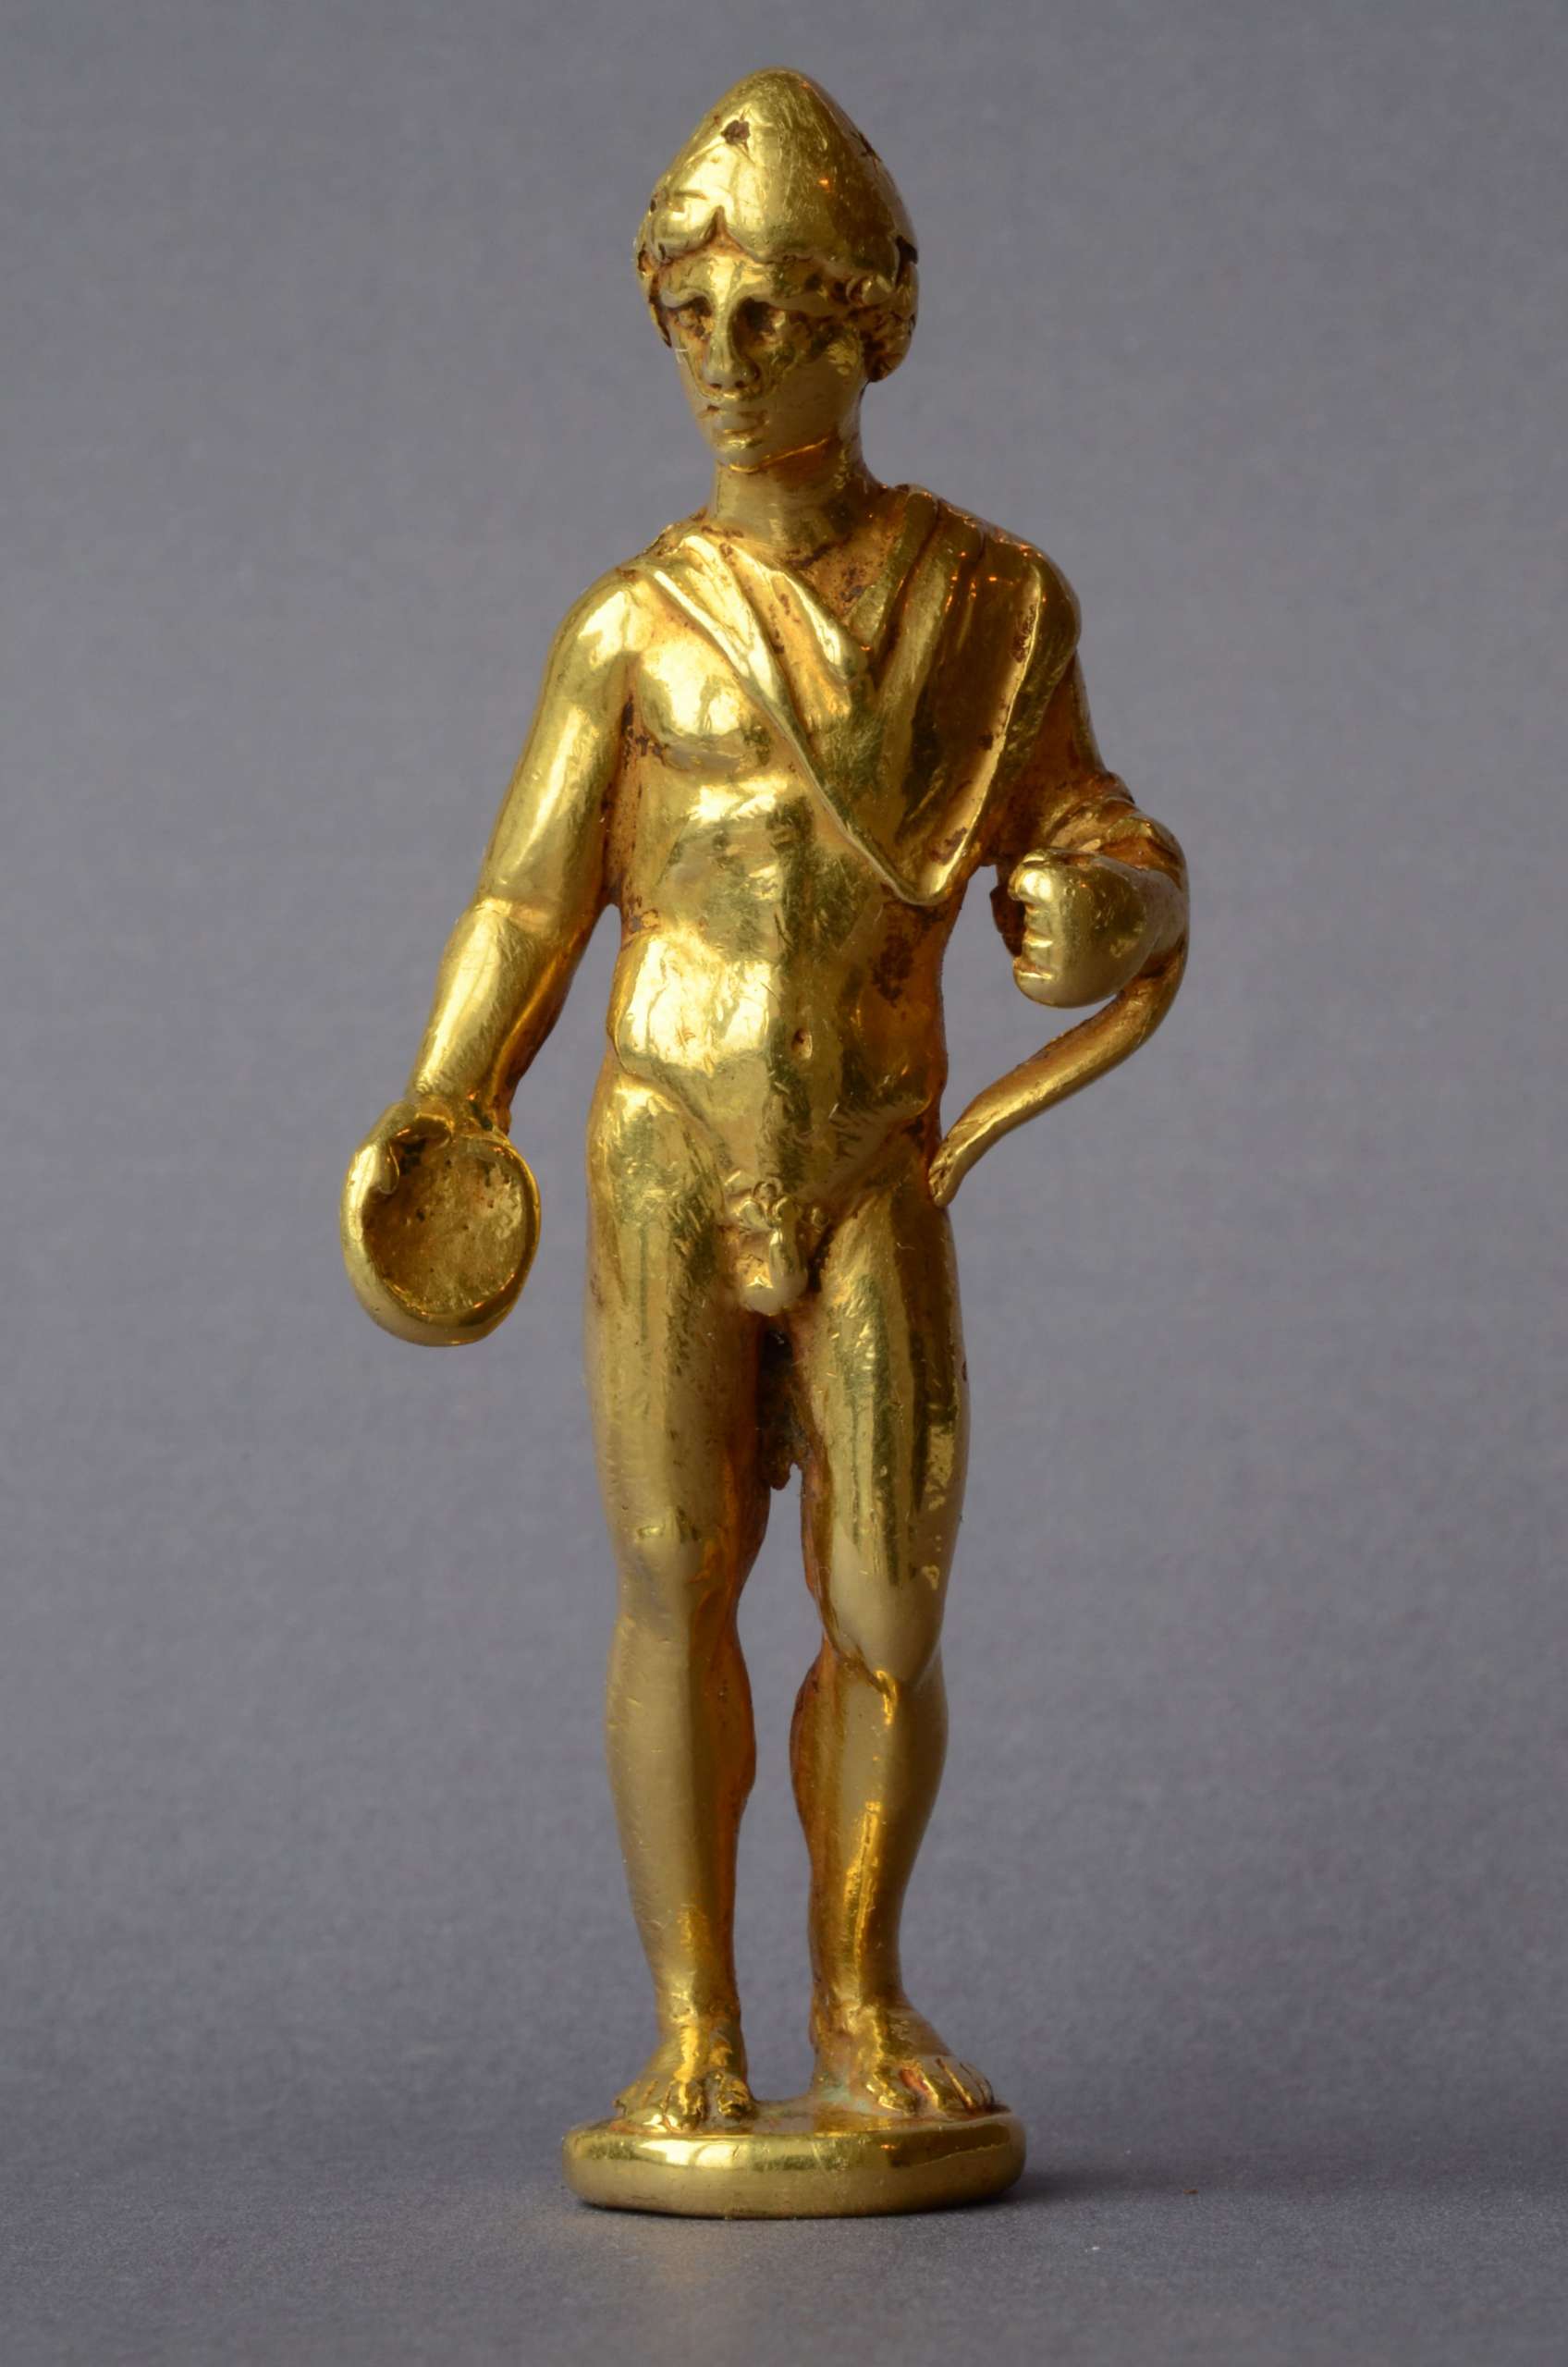 Złoty młodzieniec z Gonio, II-III w., poch. z wykopalisk w starożytnym Gonio / Apsaros, Muzeum Archeologiczne w Batumi, posąg, sztuka Gruzji, Niezła sztuka